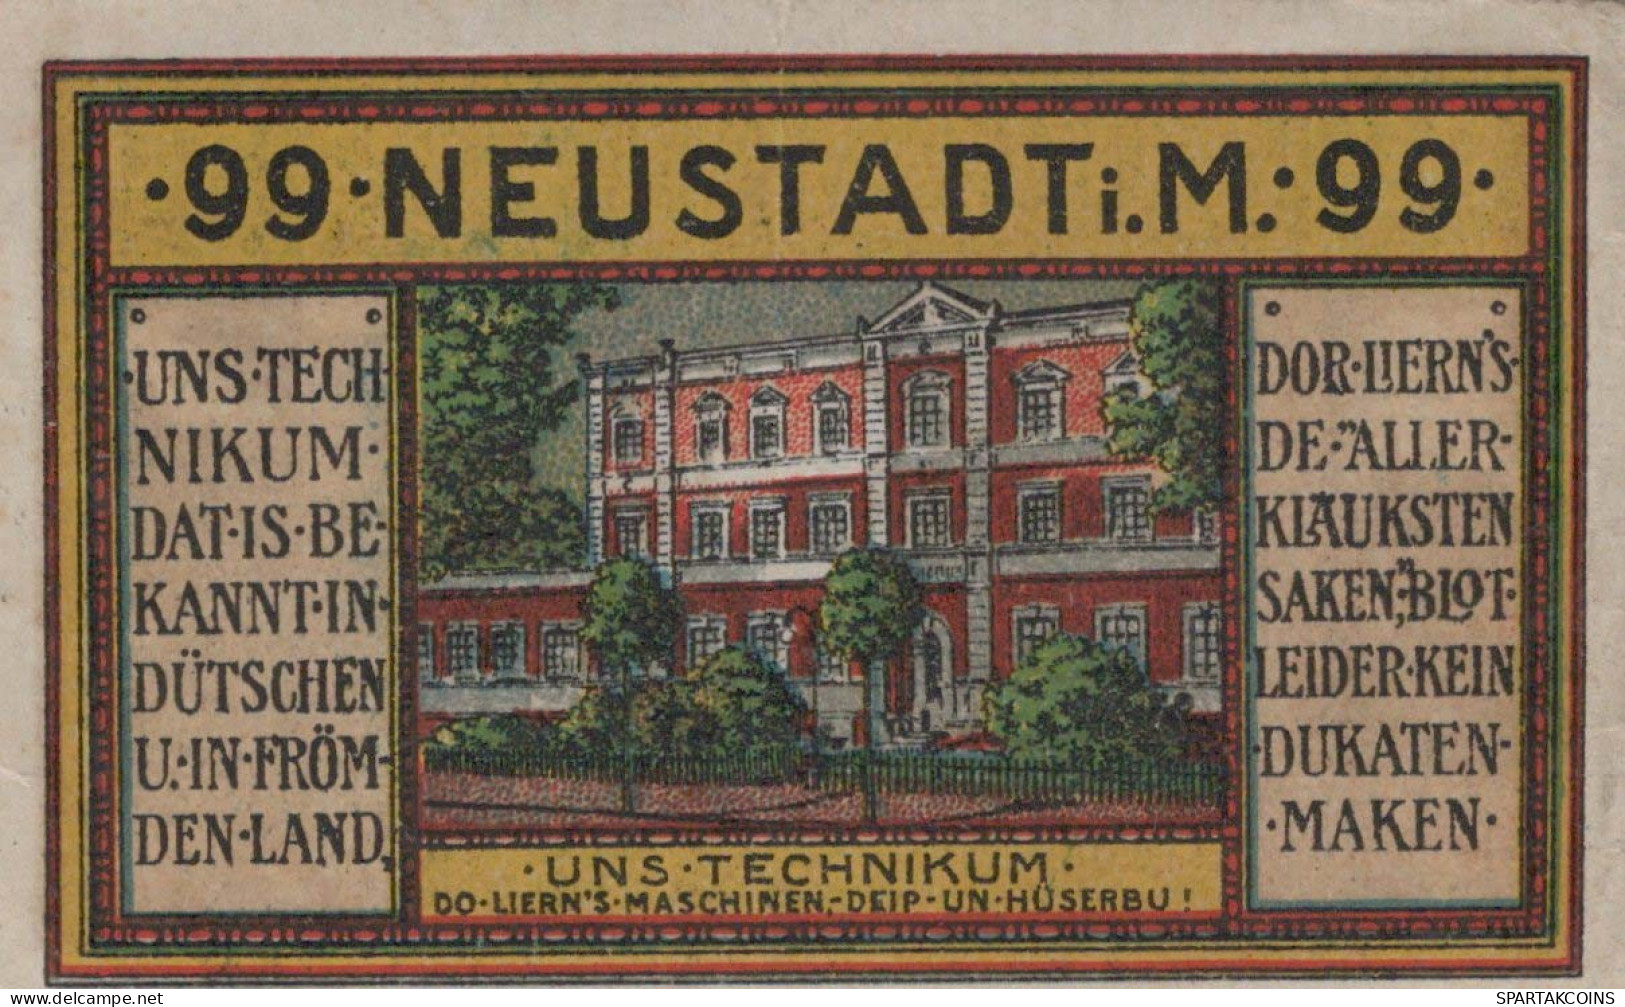 99 PFENNIG 1921 Stadt NEUSTADT MECKLENBURG-SCHWERIN UNC DEUTSCHLAND #PH258 - [11] Lokale Uitgaven